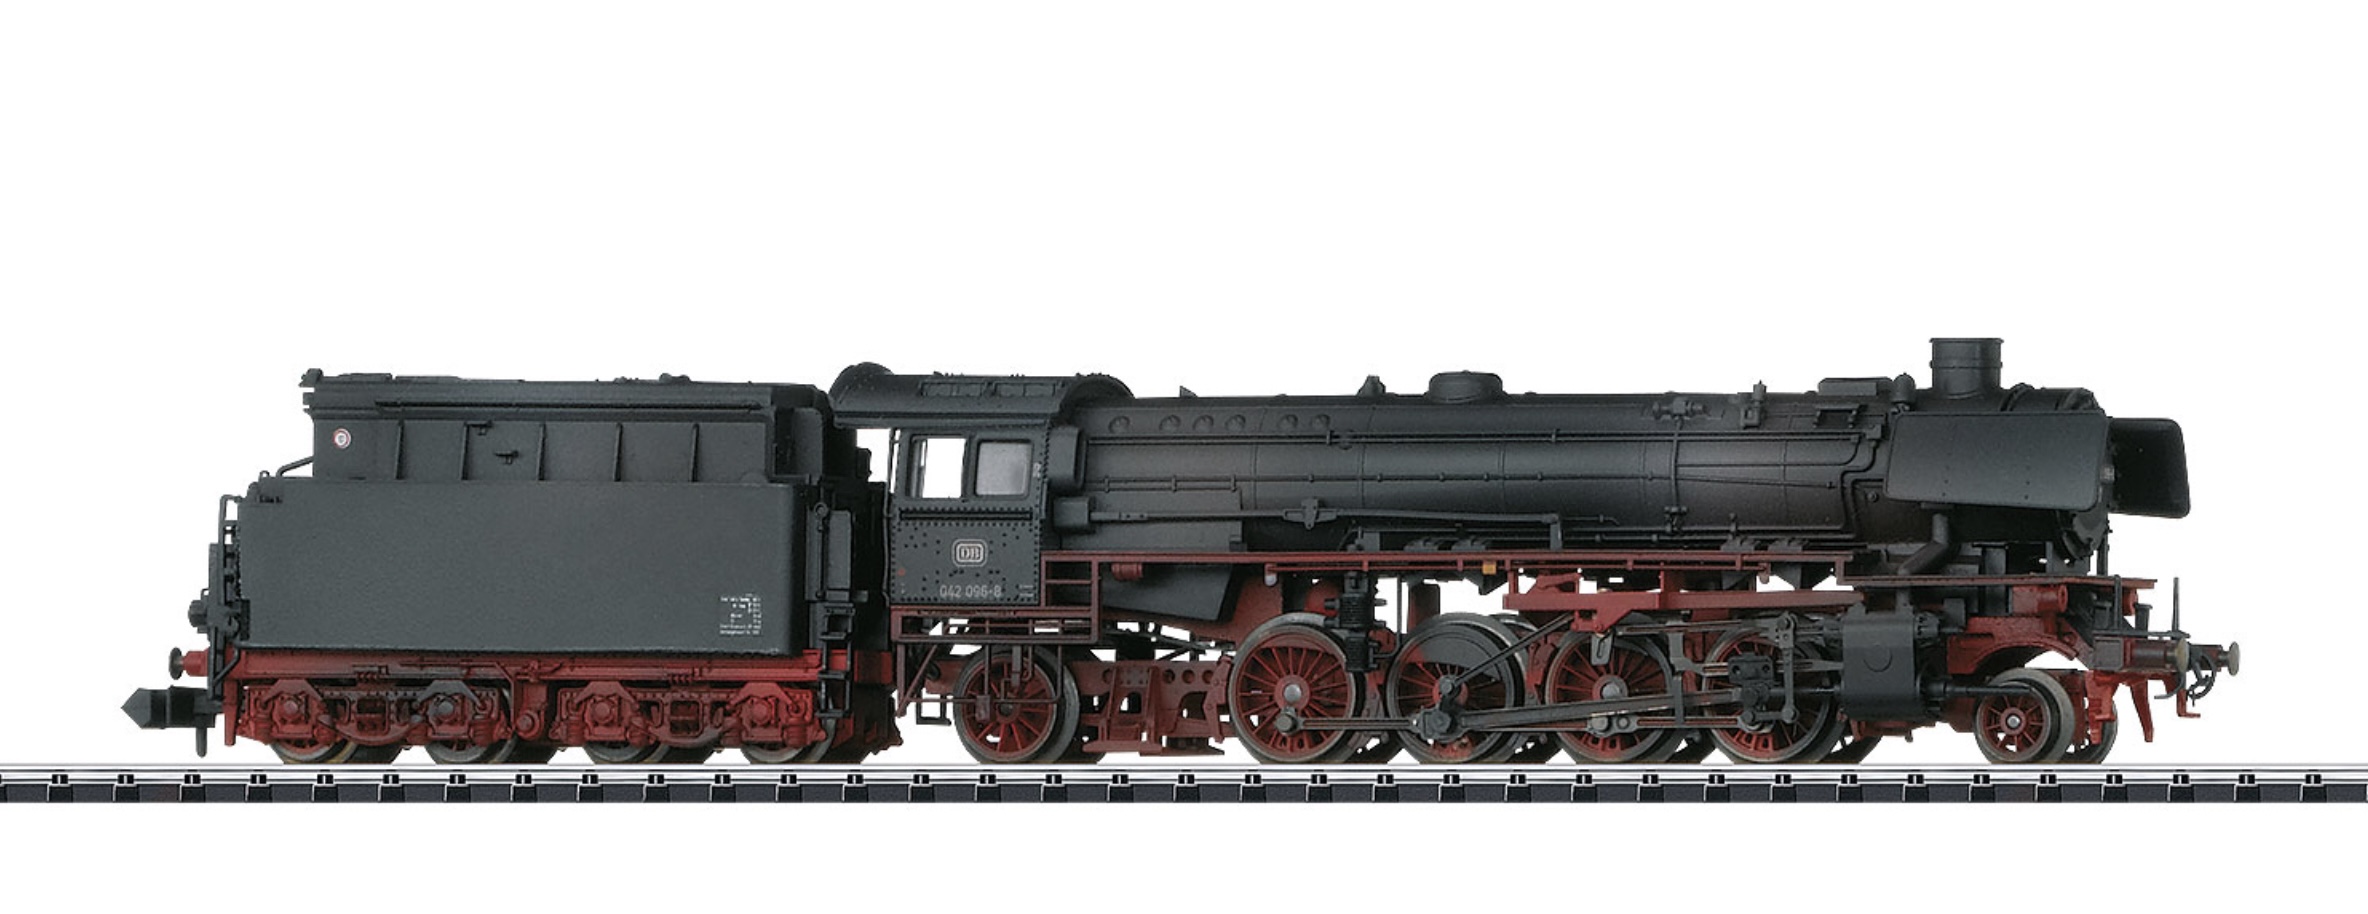 N Scale - Minitrix - 16412 - Locomotive, Steam, 2-10-2 Class 42 - Deutsche Bundesbahn - 042 096-8